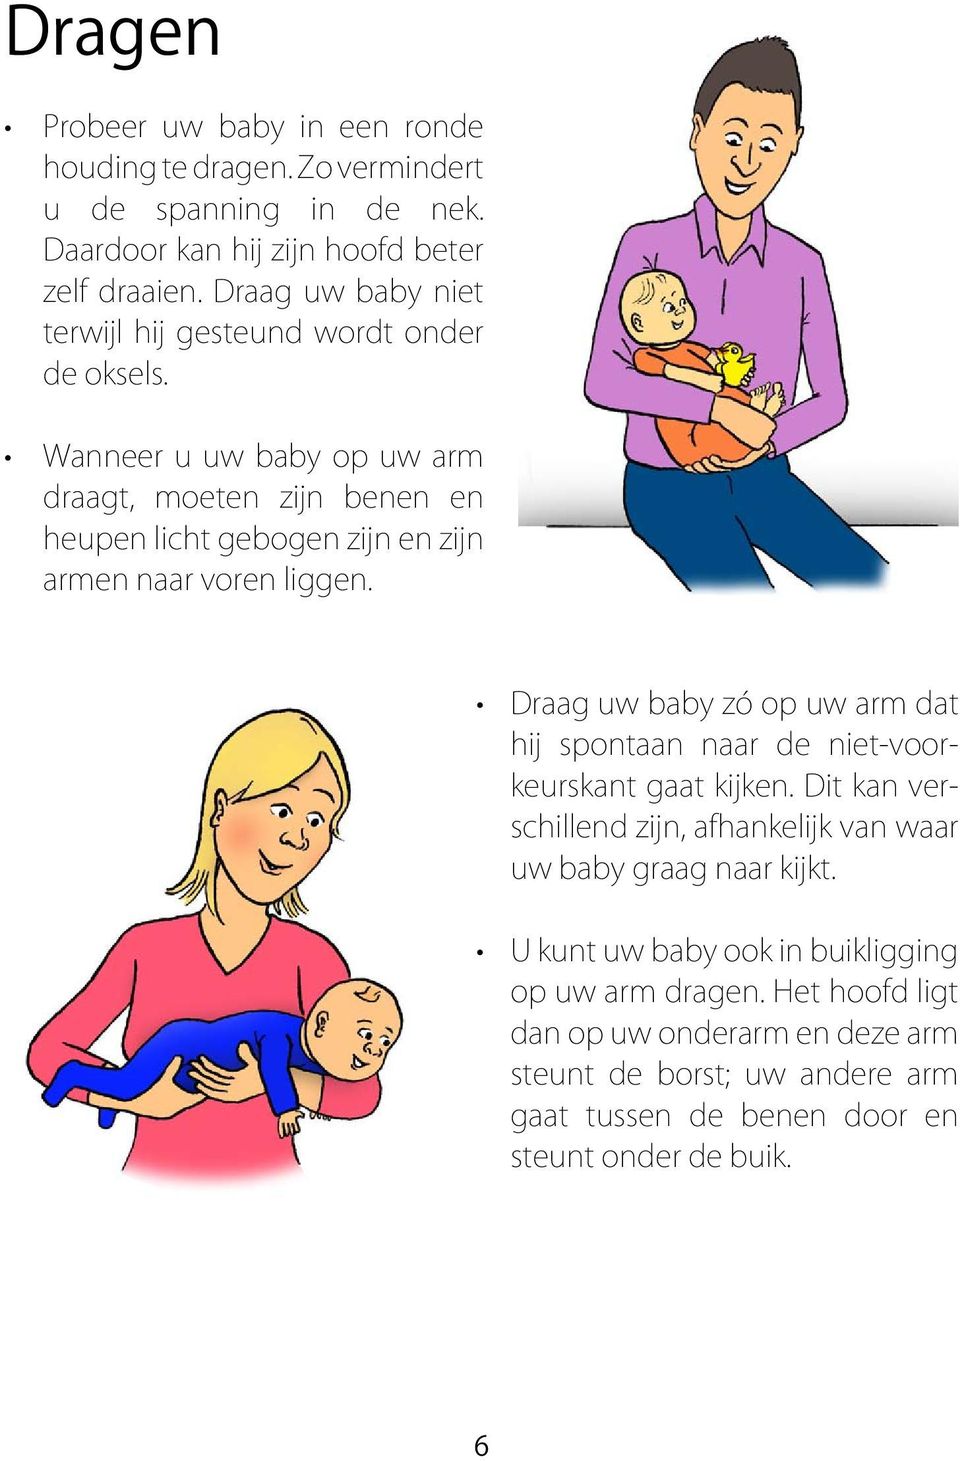 Wanneer u uw baby op uw arm draagt, moeten zijn benen en heupen licht gebogen zijn en zijn armen naar voren liggen.